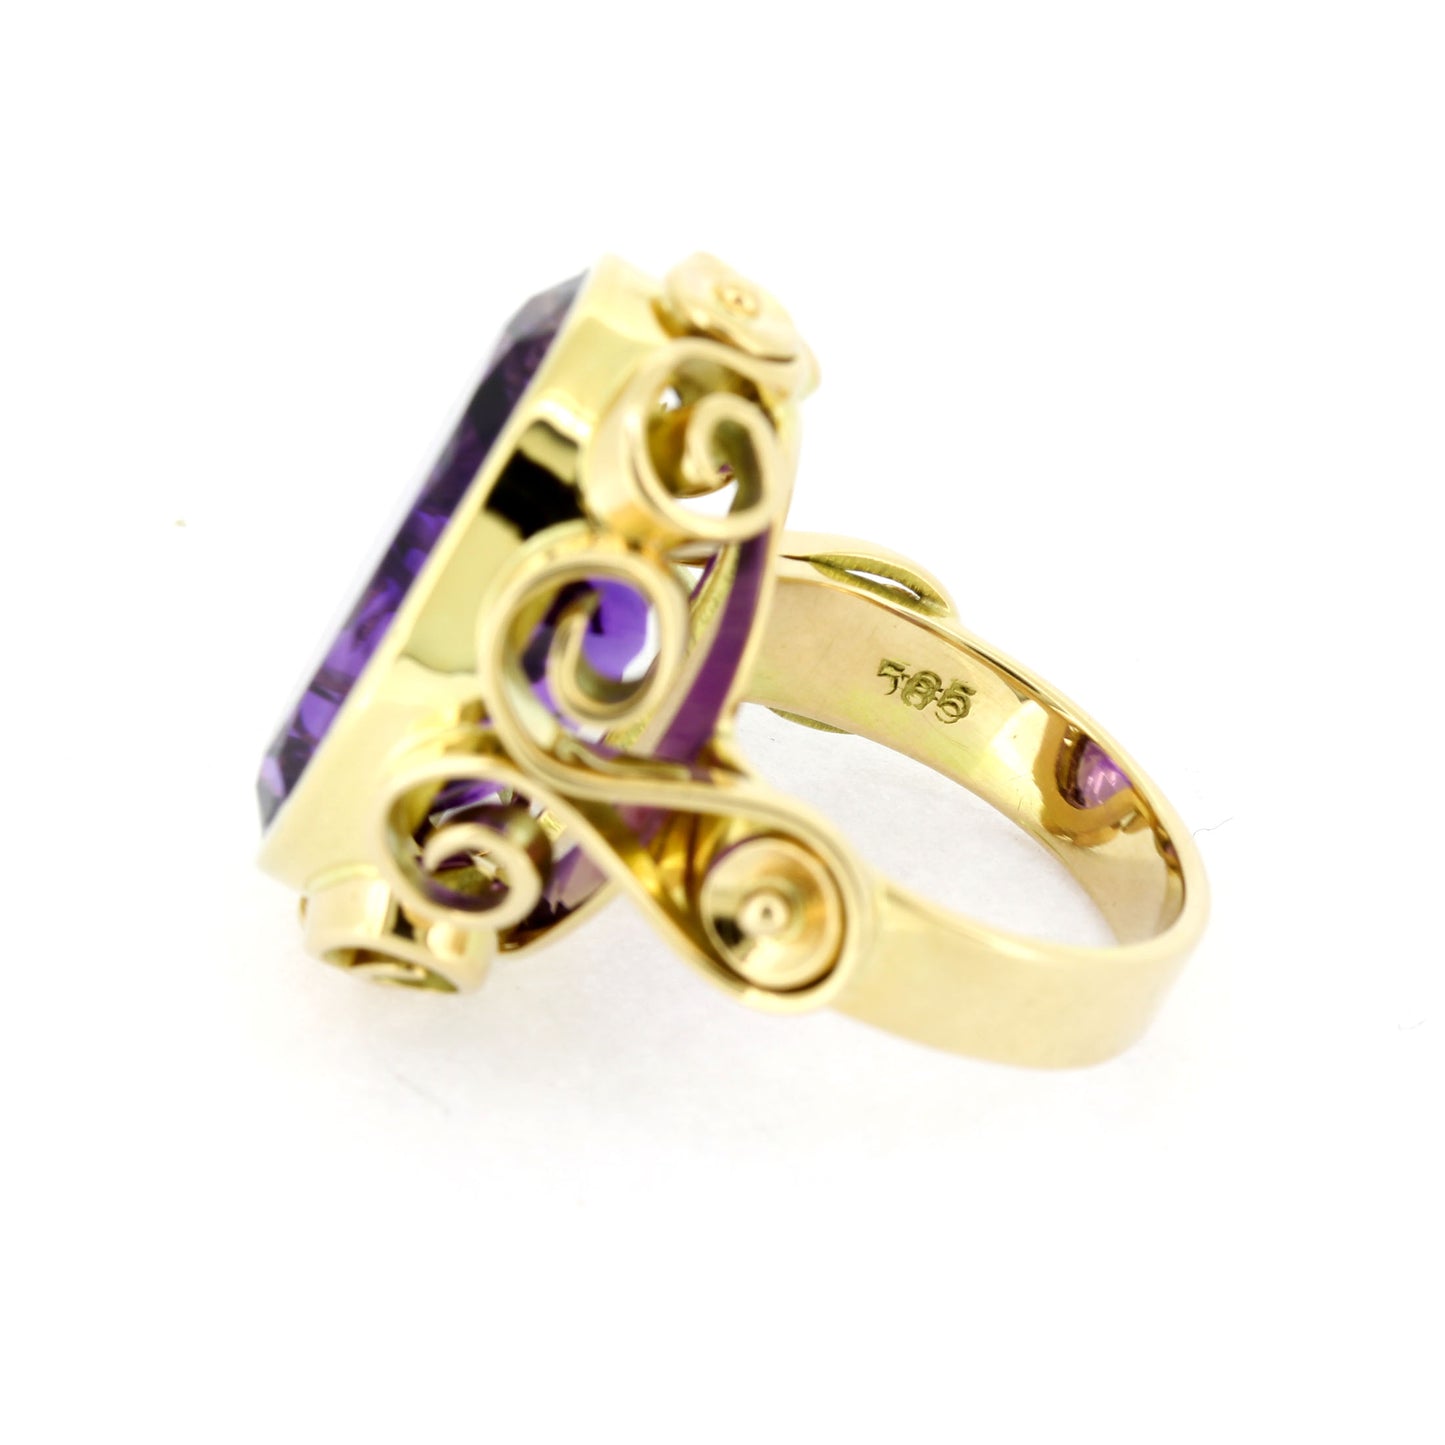 Amethyst Ring 585 Gold Facettiert 14 Kt Gelbgold - Wert 1340,-